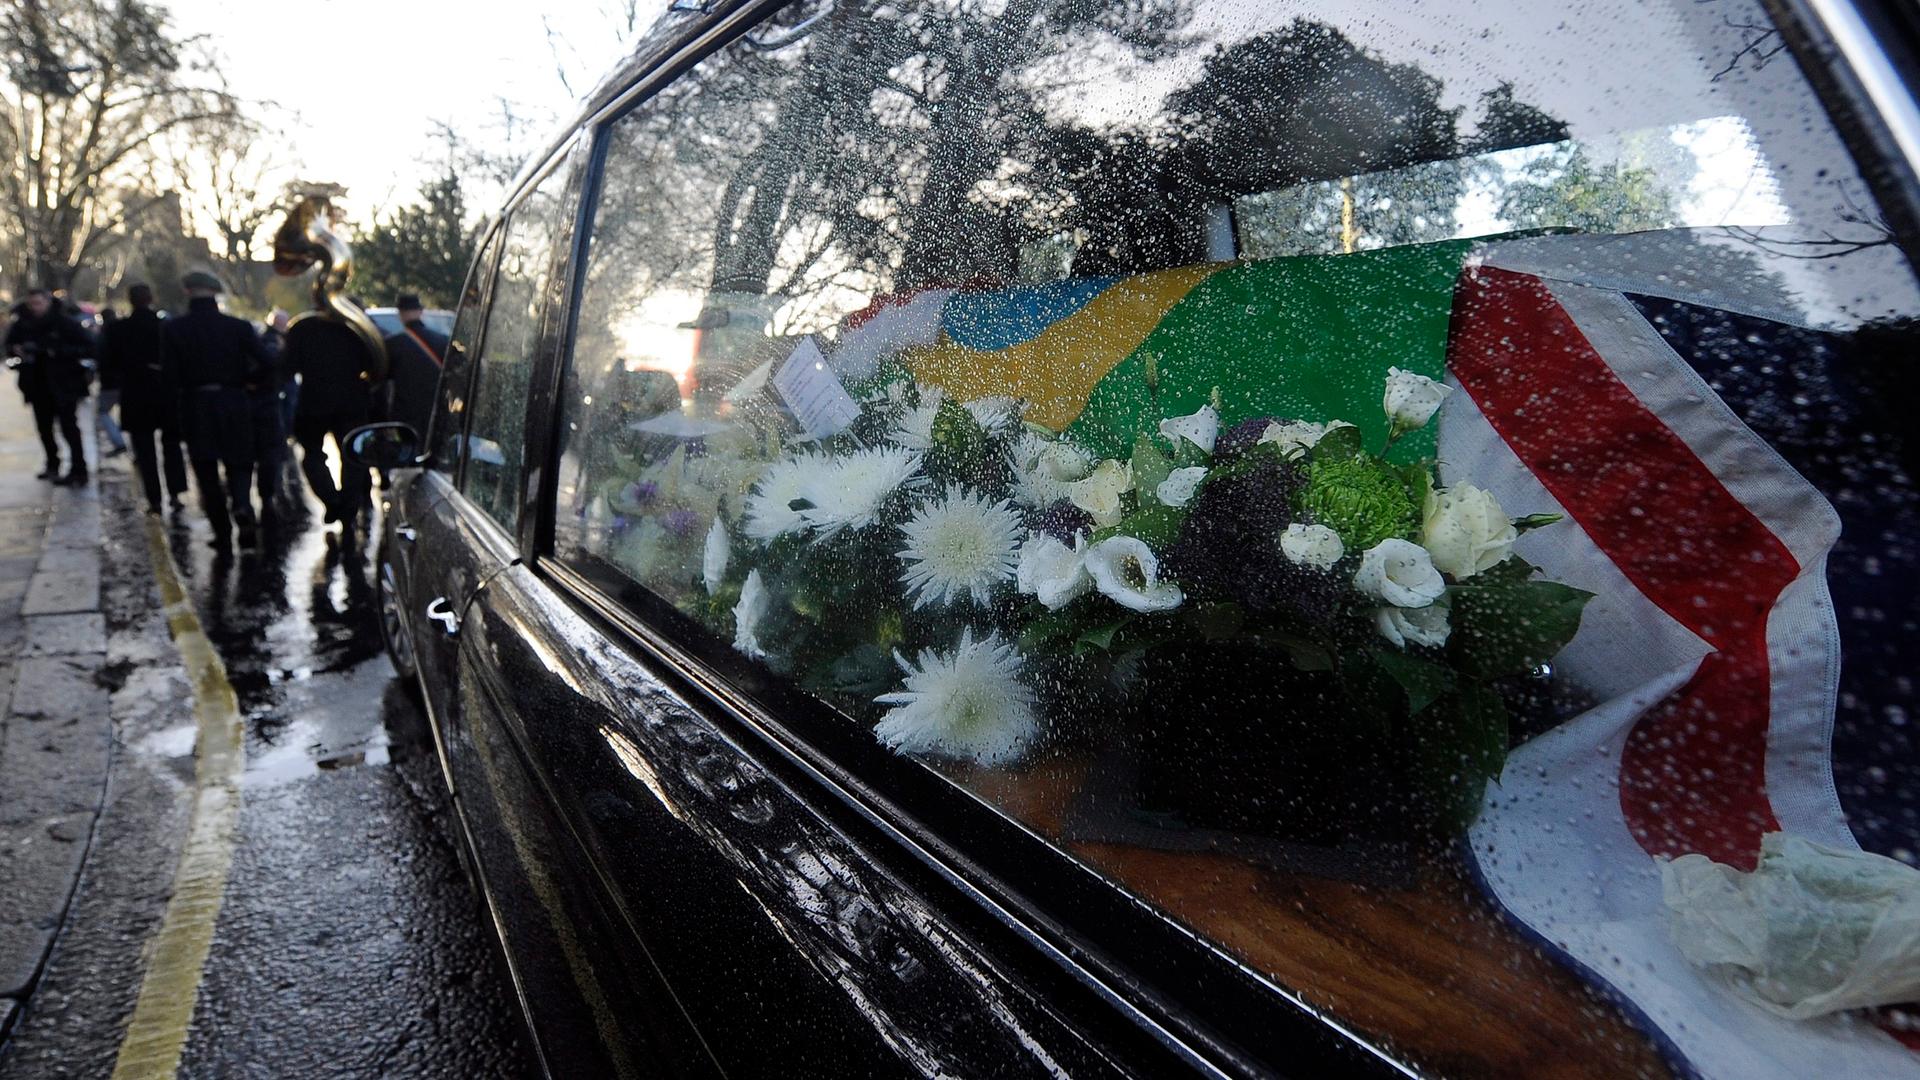 Leichenwagen mit dem Sarg von Ronnie Biggs, eingehüllt in die britische und die brasilianische Flagge und einer Brass Band, die ihm zu Ehren spielt.